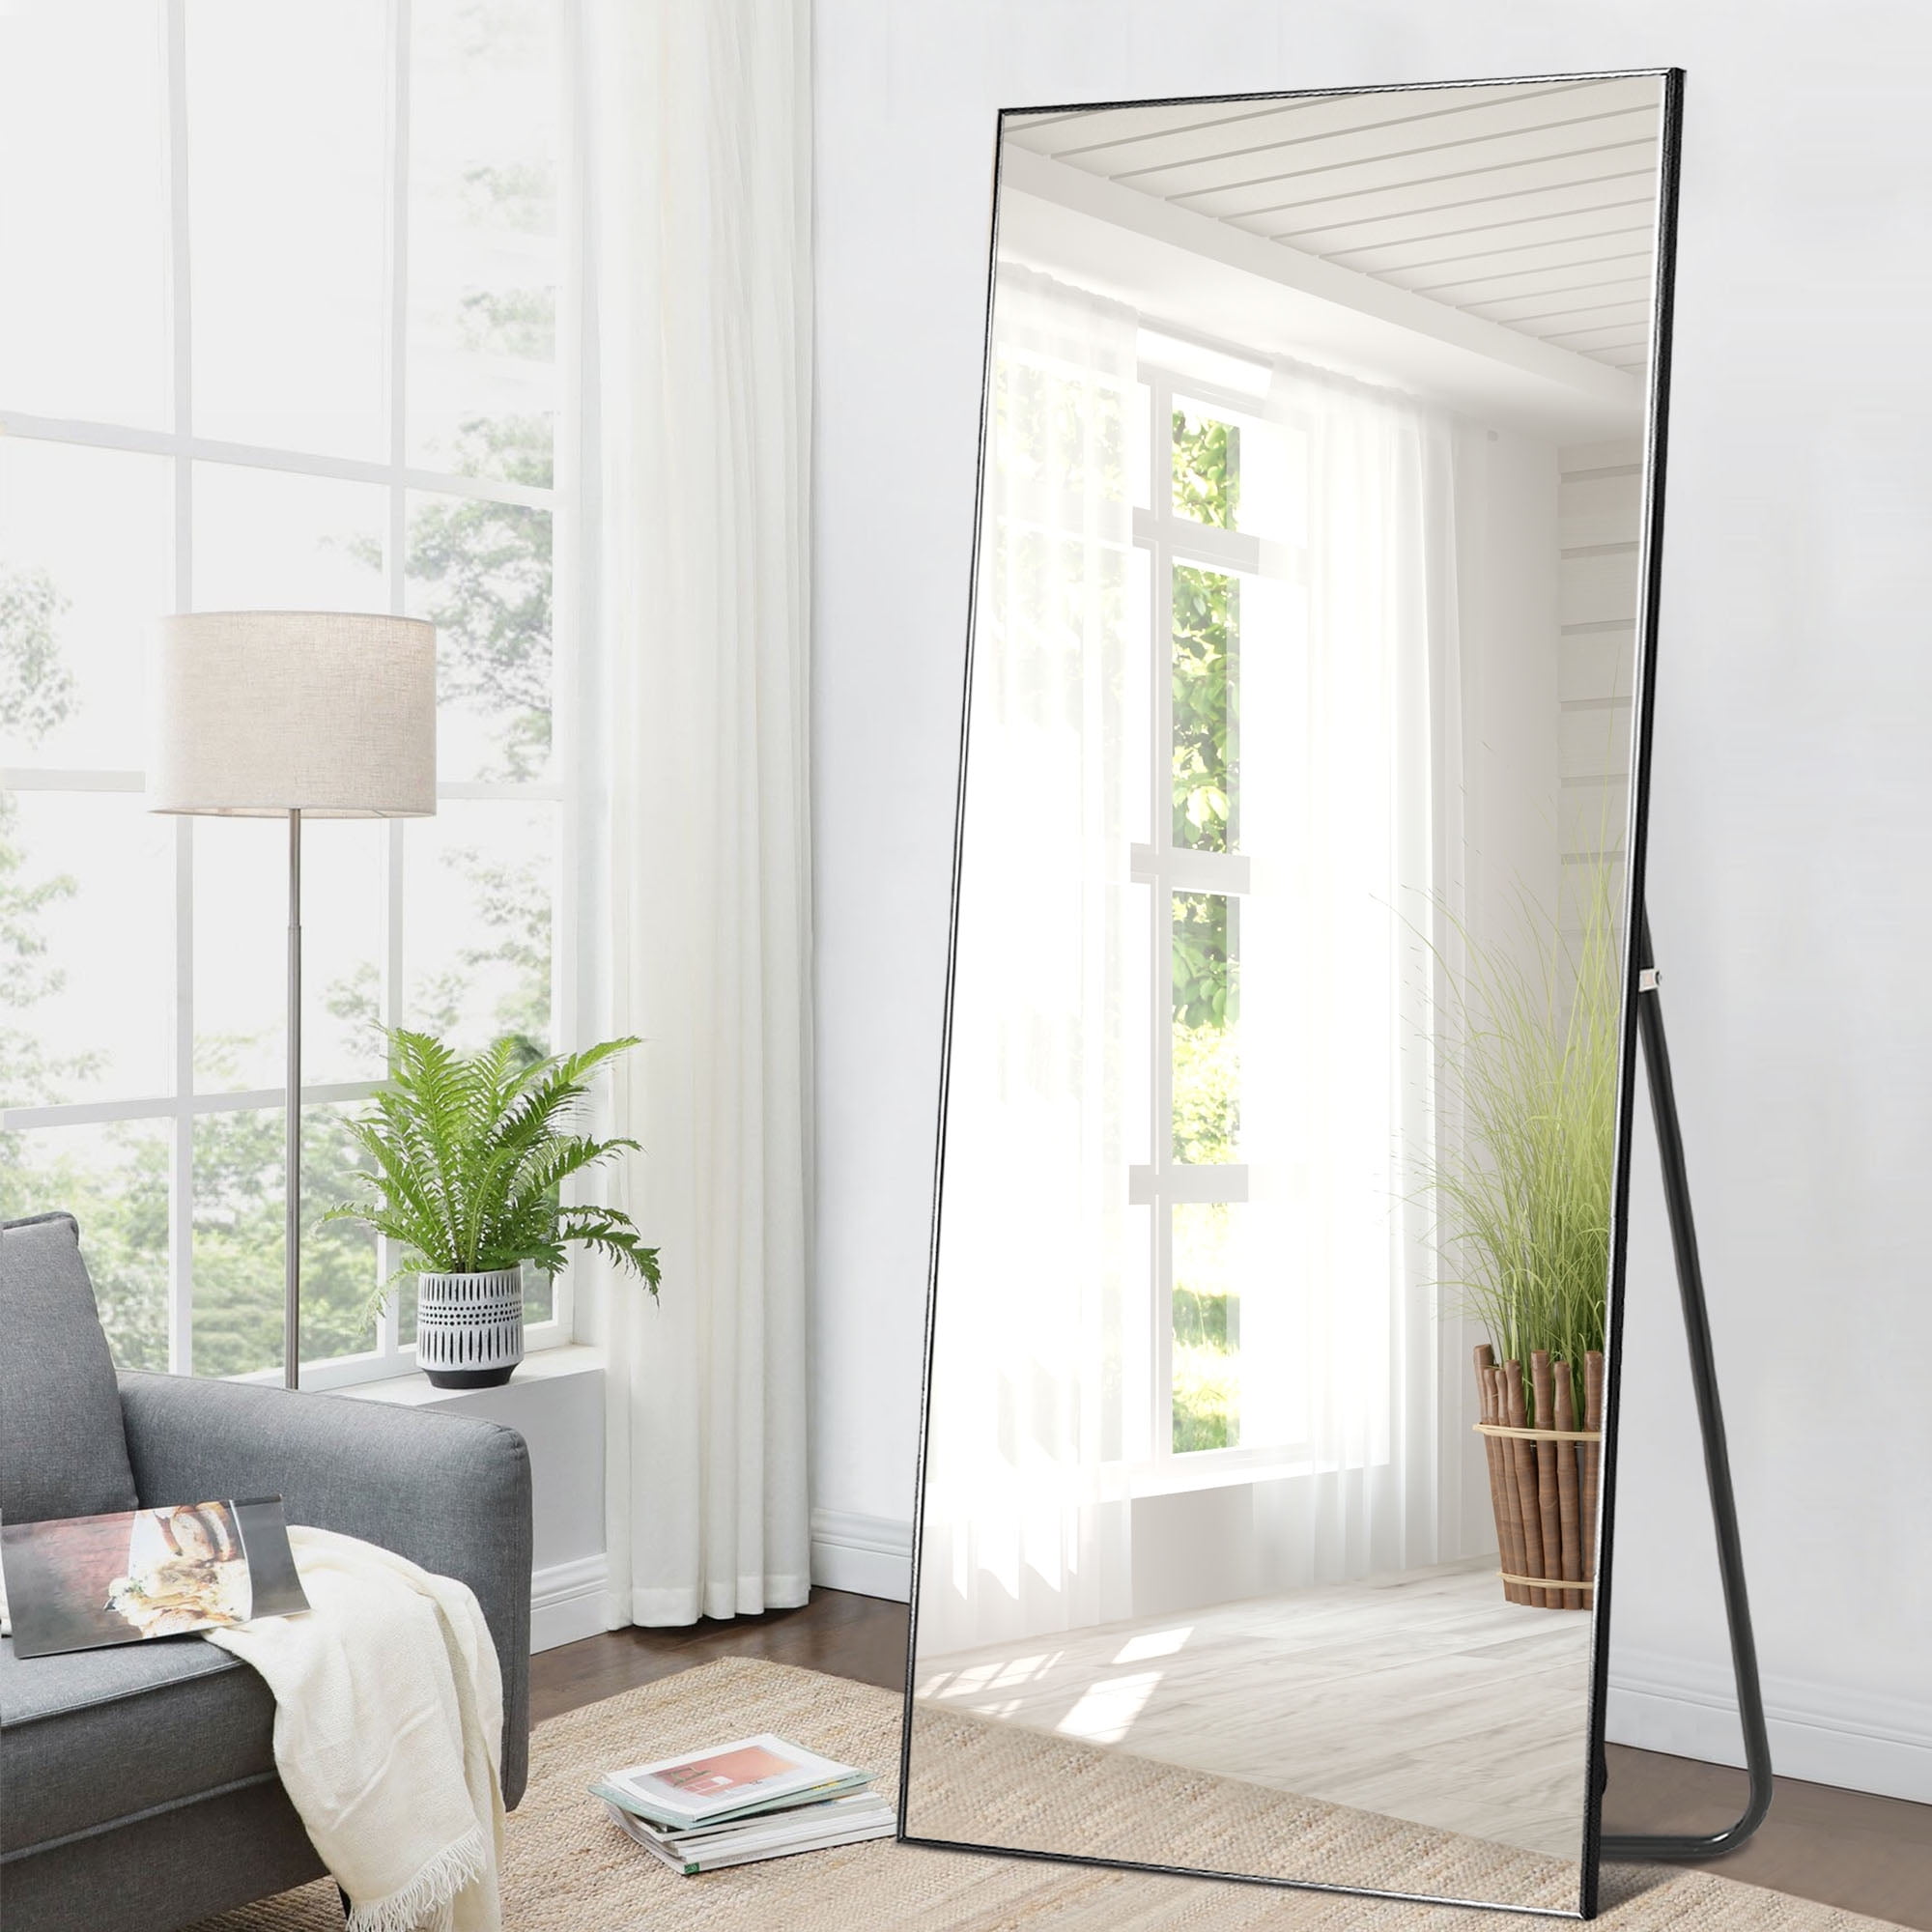 71" x 32" NeuType Oversized Floor Mirror Full Length Mirror $150